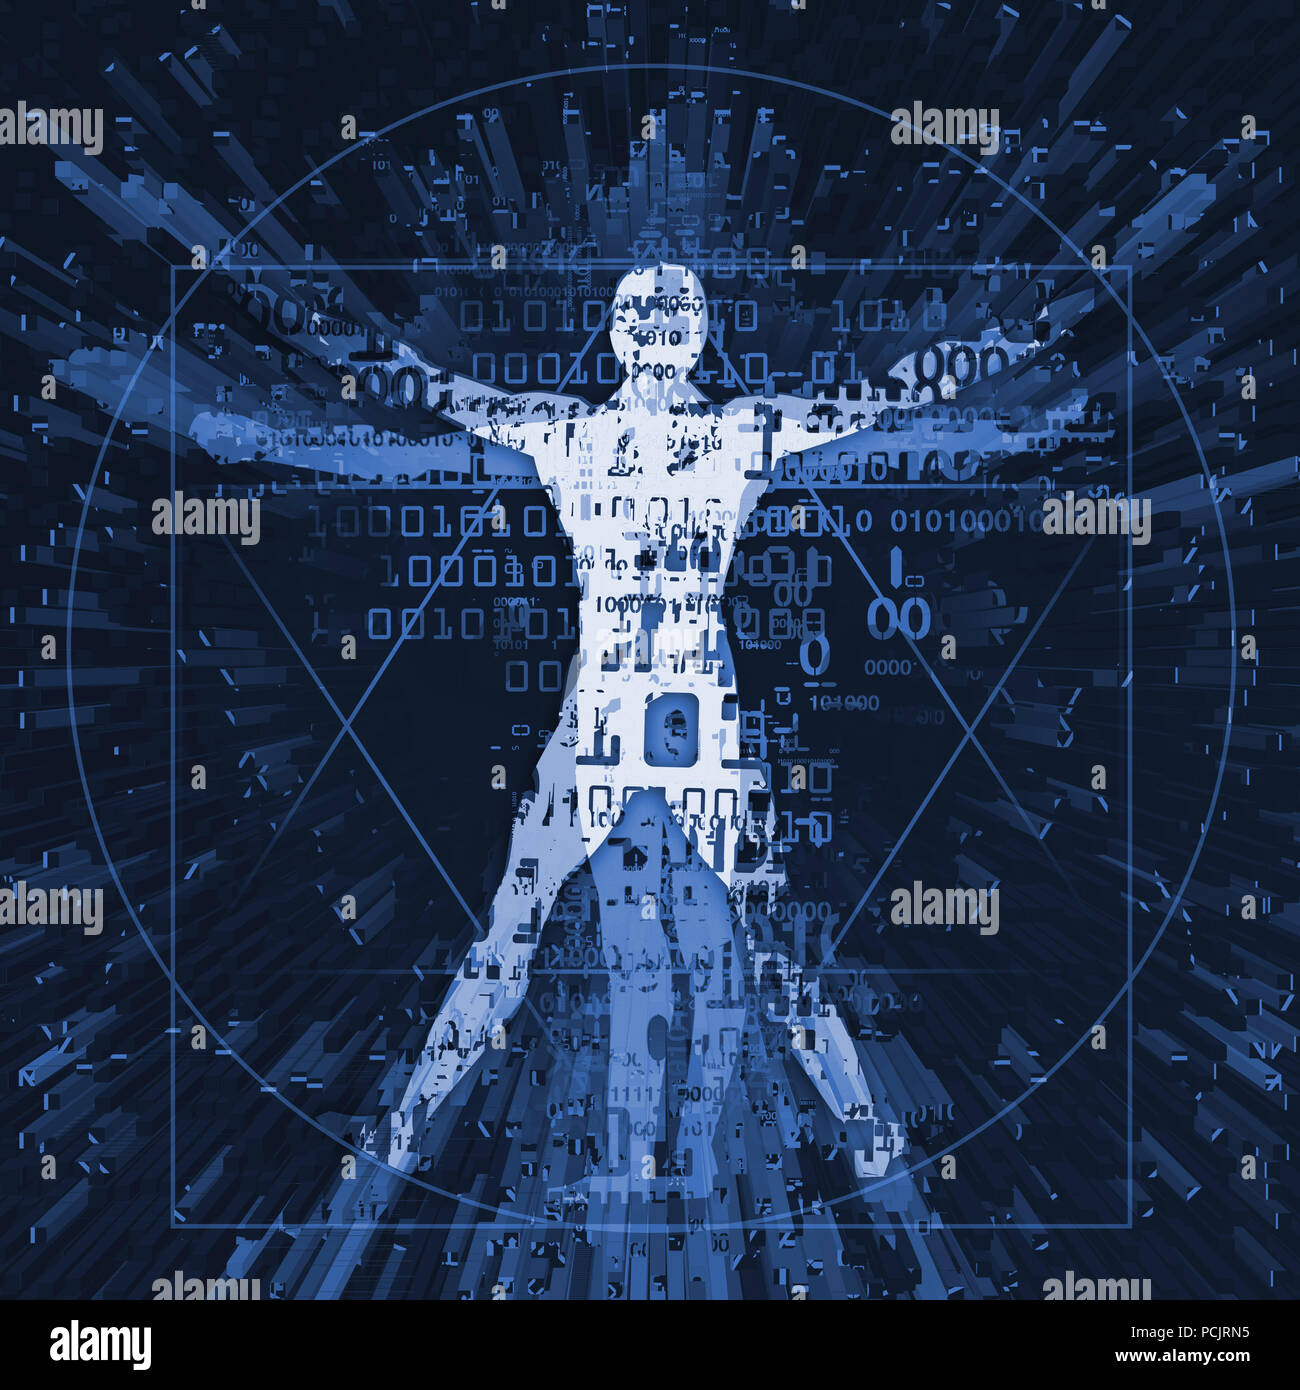 L'uomo vitruviano di età digitale. Il futuristico illustrazione dell'uomo vitruviano con codici binari simboleggiato era digitale. Foto Stock